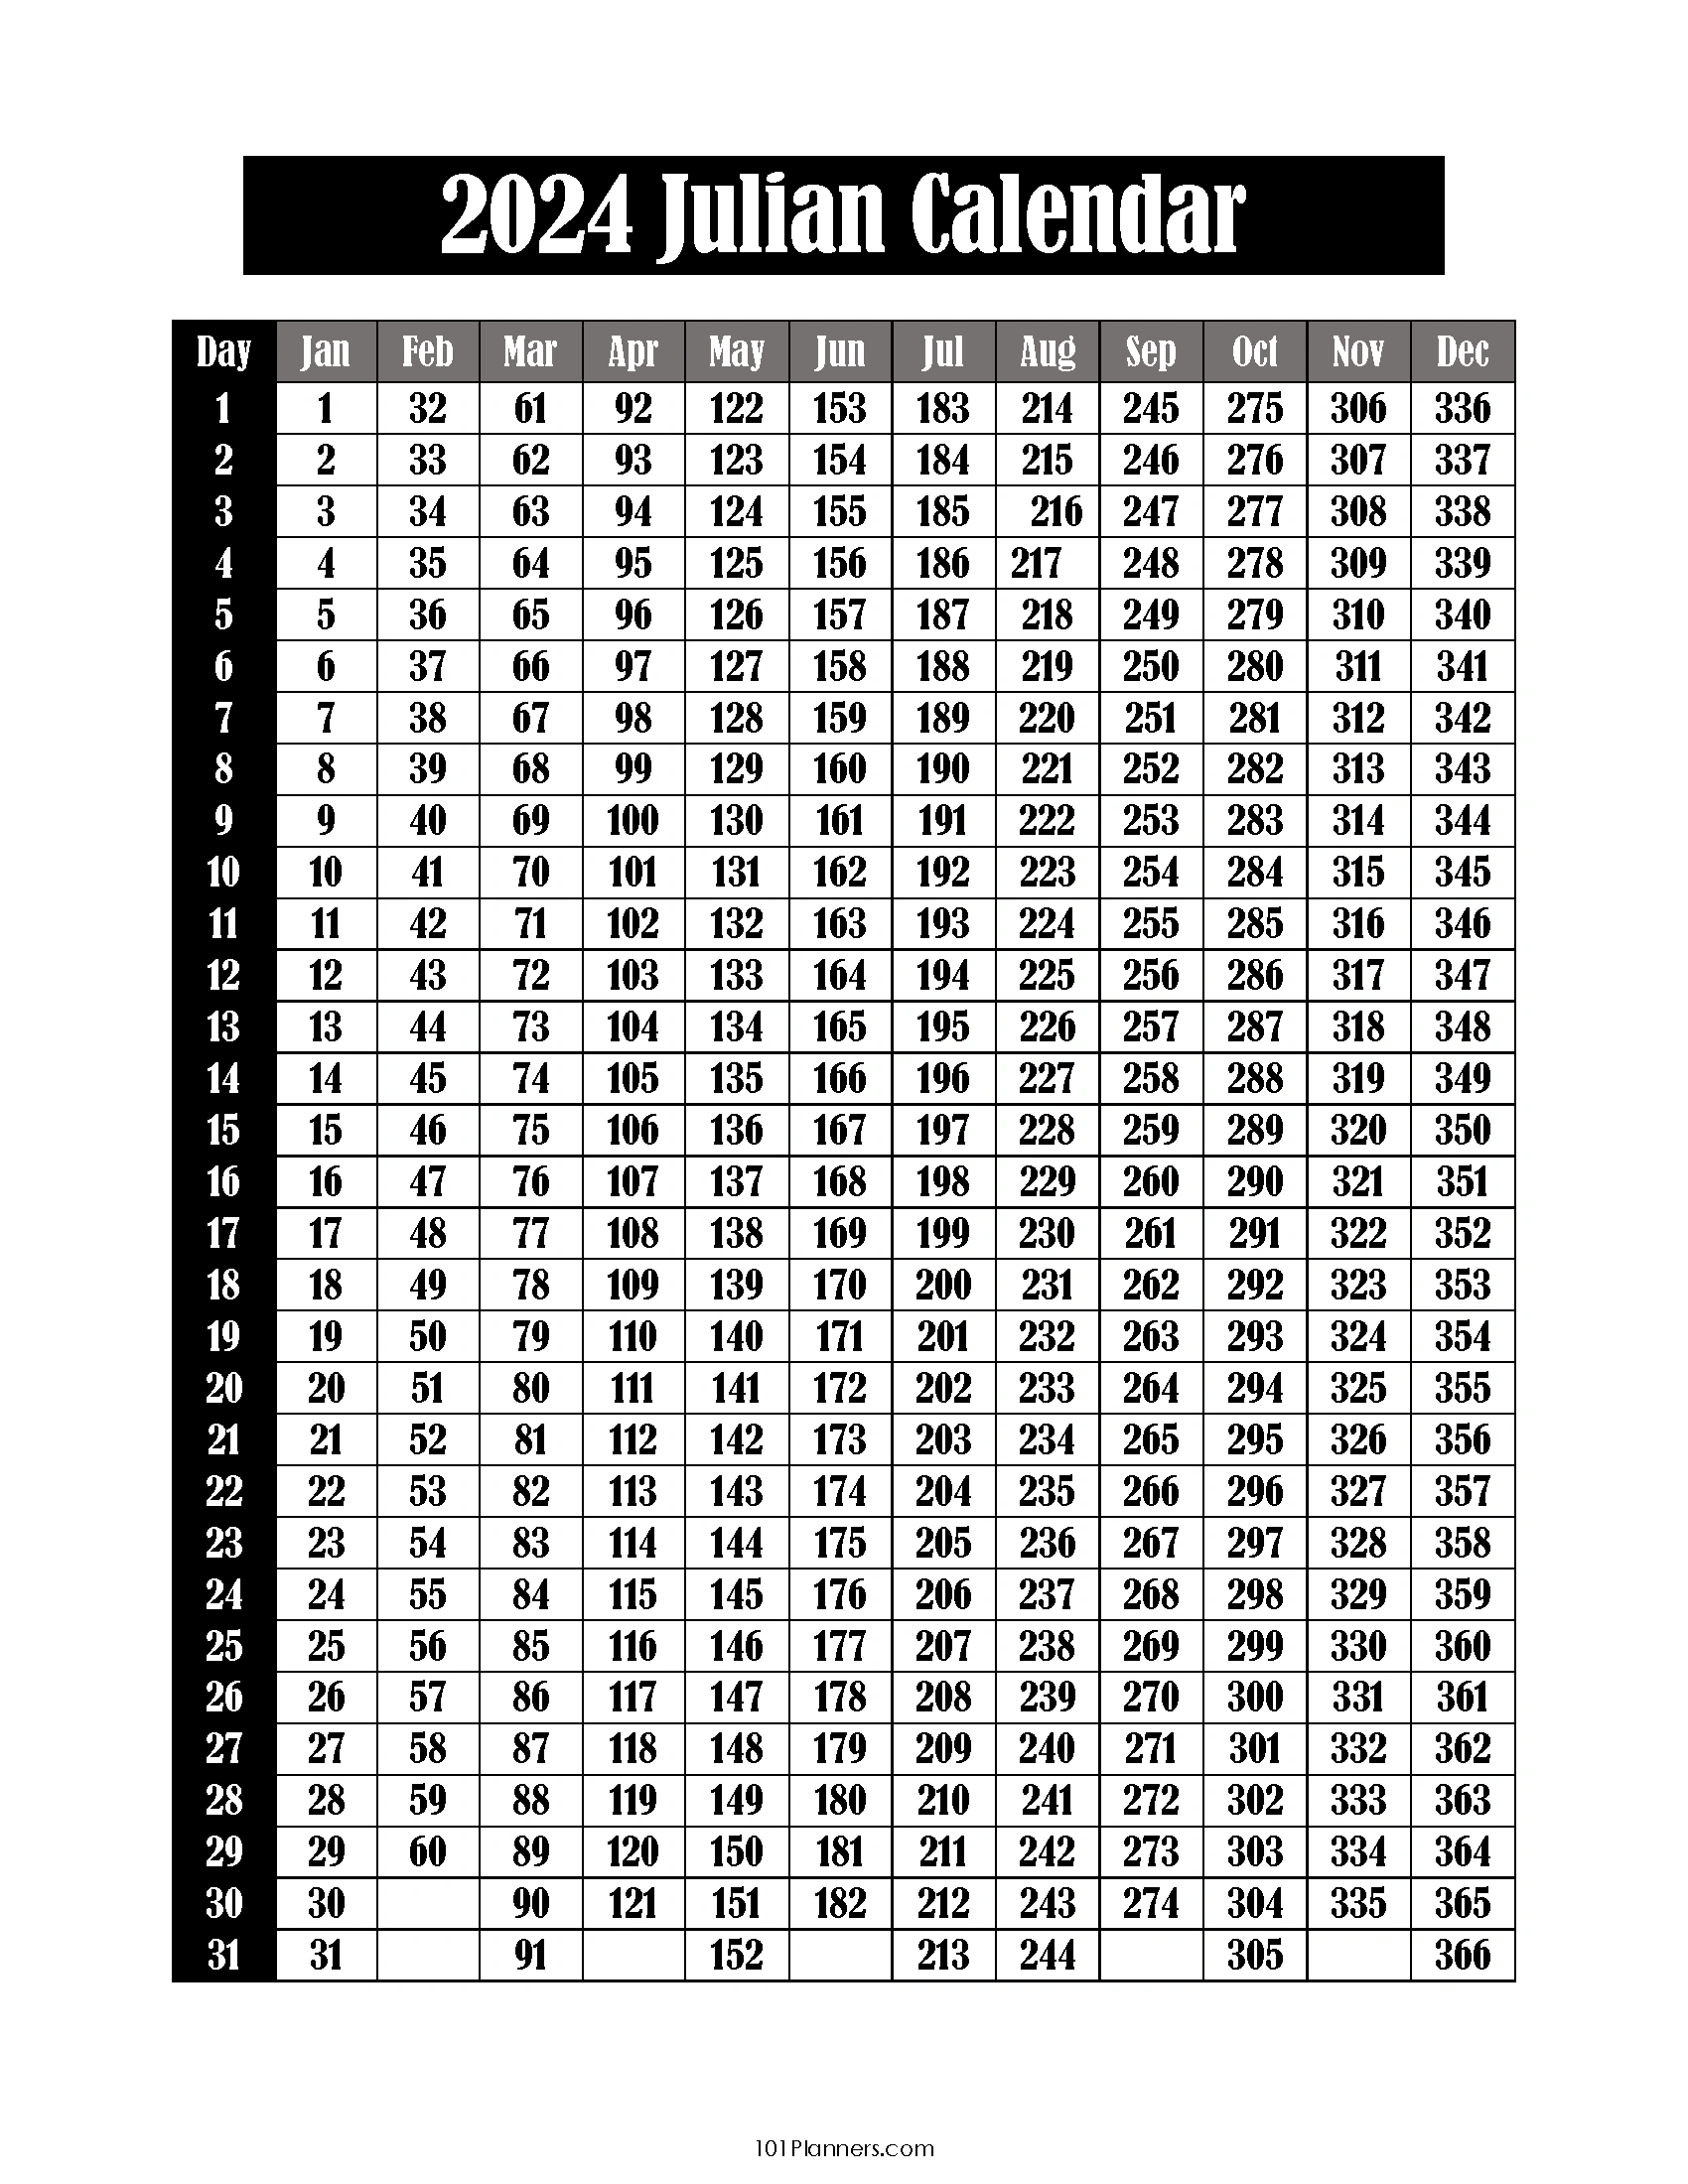 Free Printable Julian Calendar 2024-2032 | Julian Date Today inside 2024 Julien Calendar